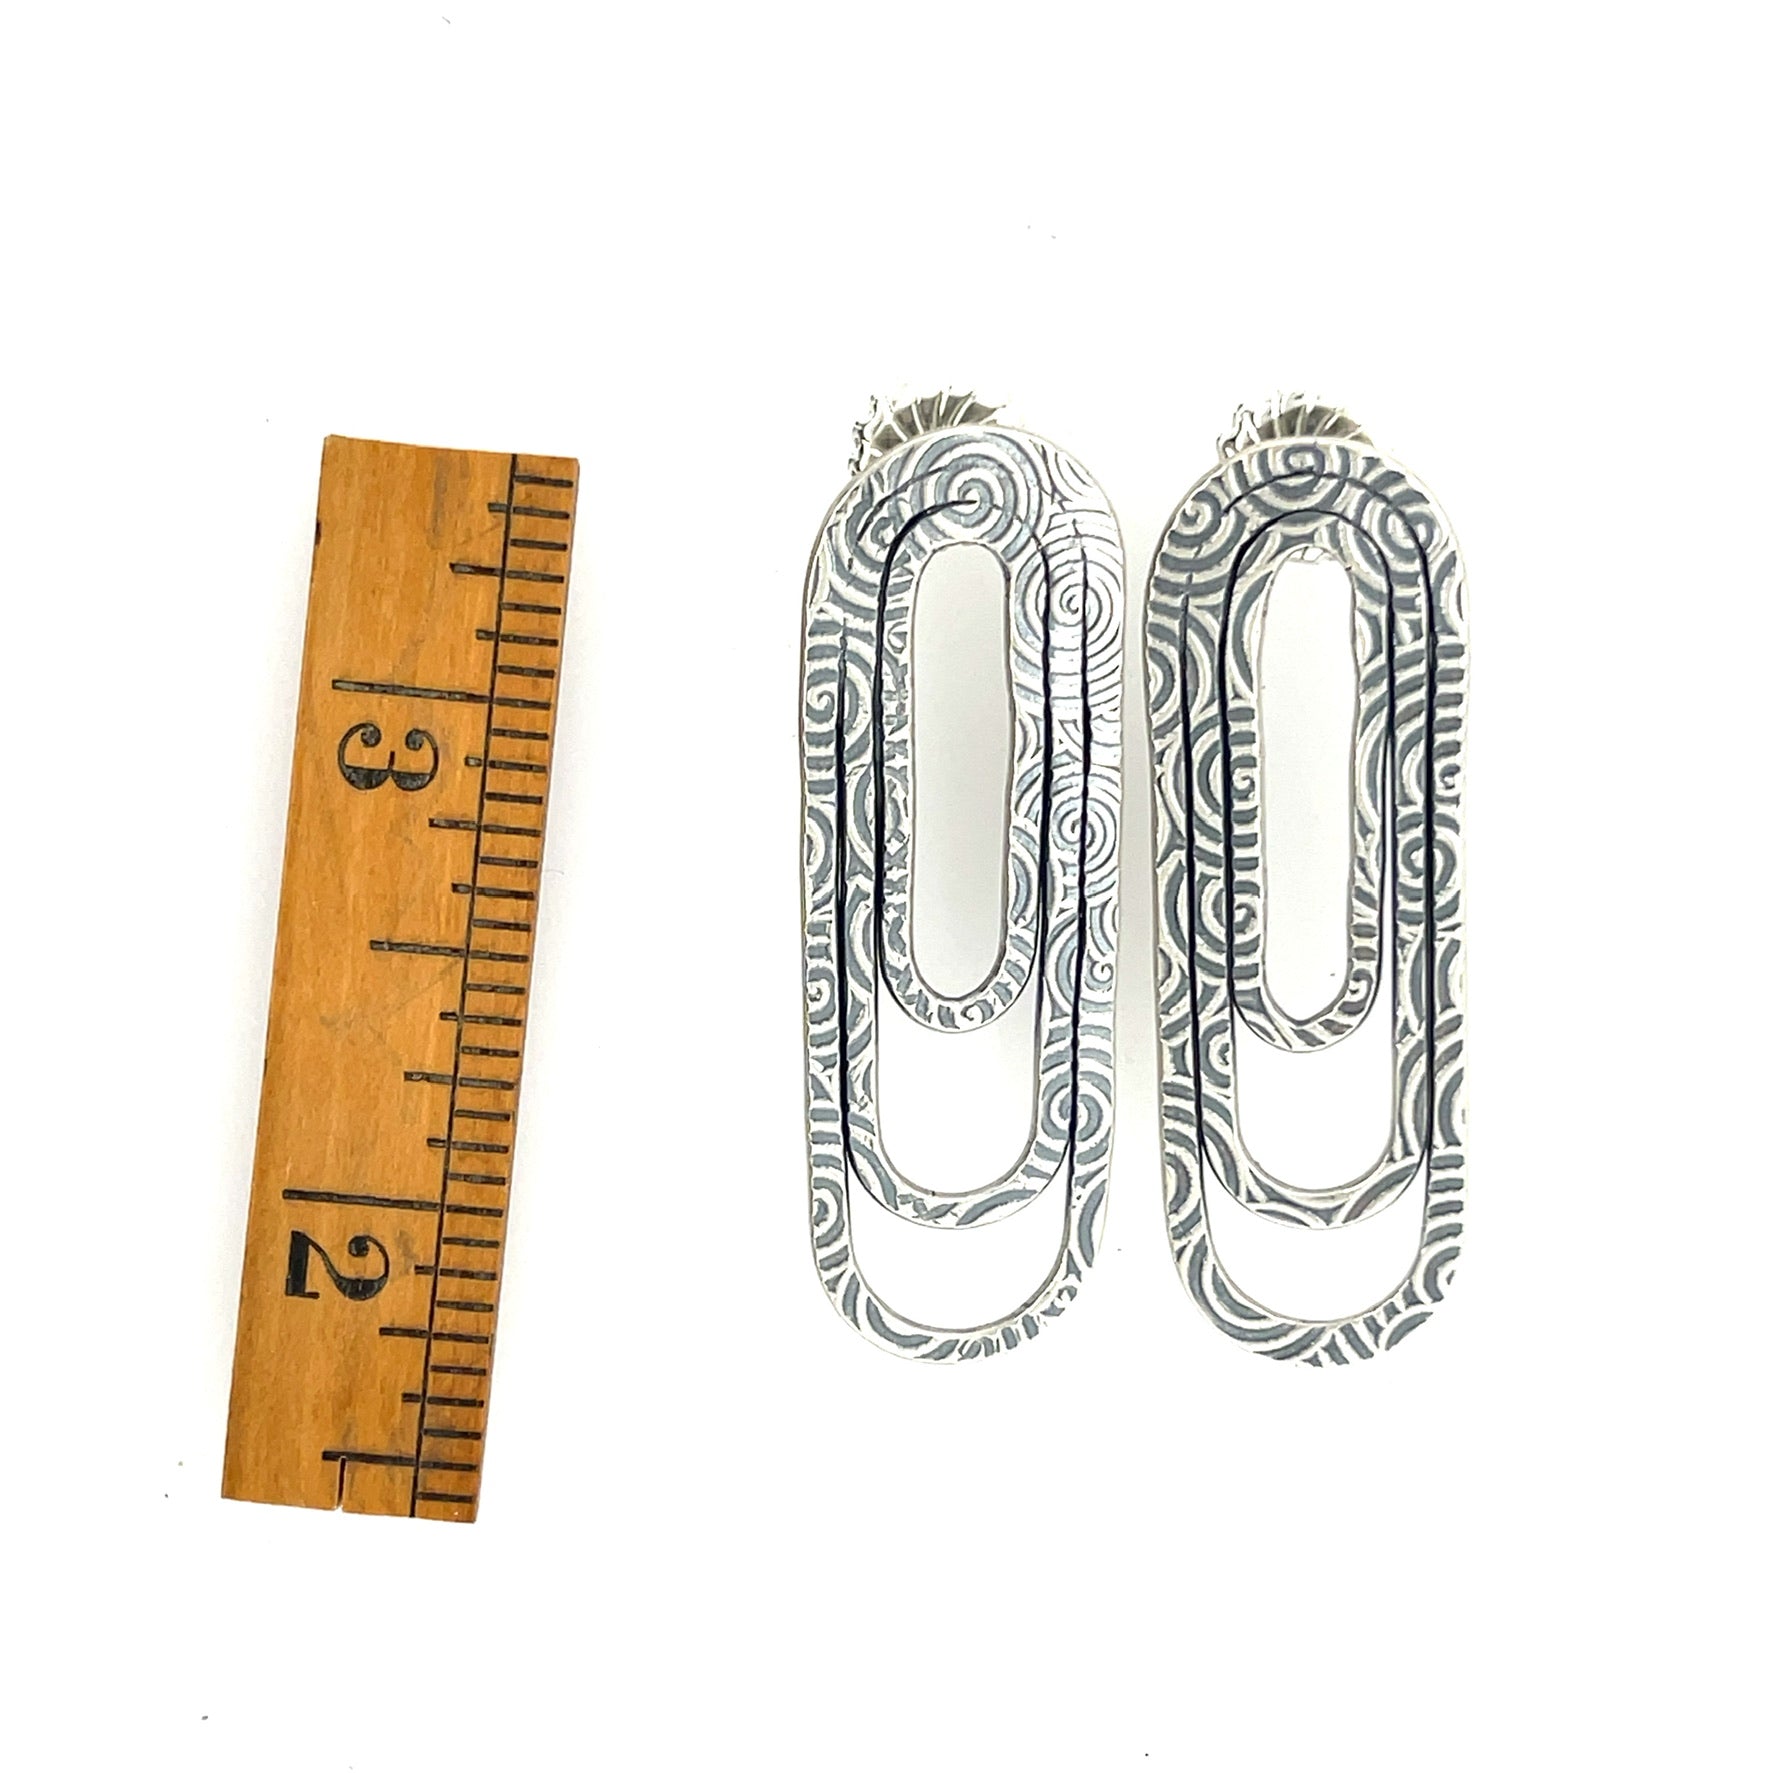 Sterling Silver Paper Clip Earrings